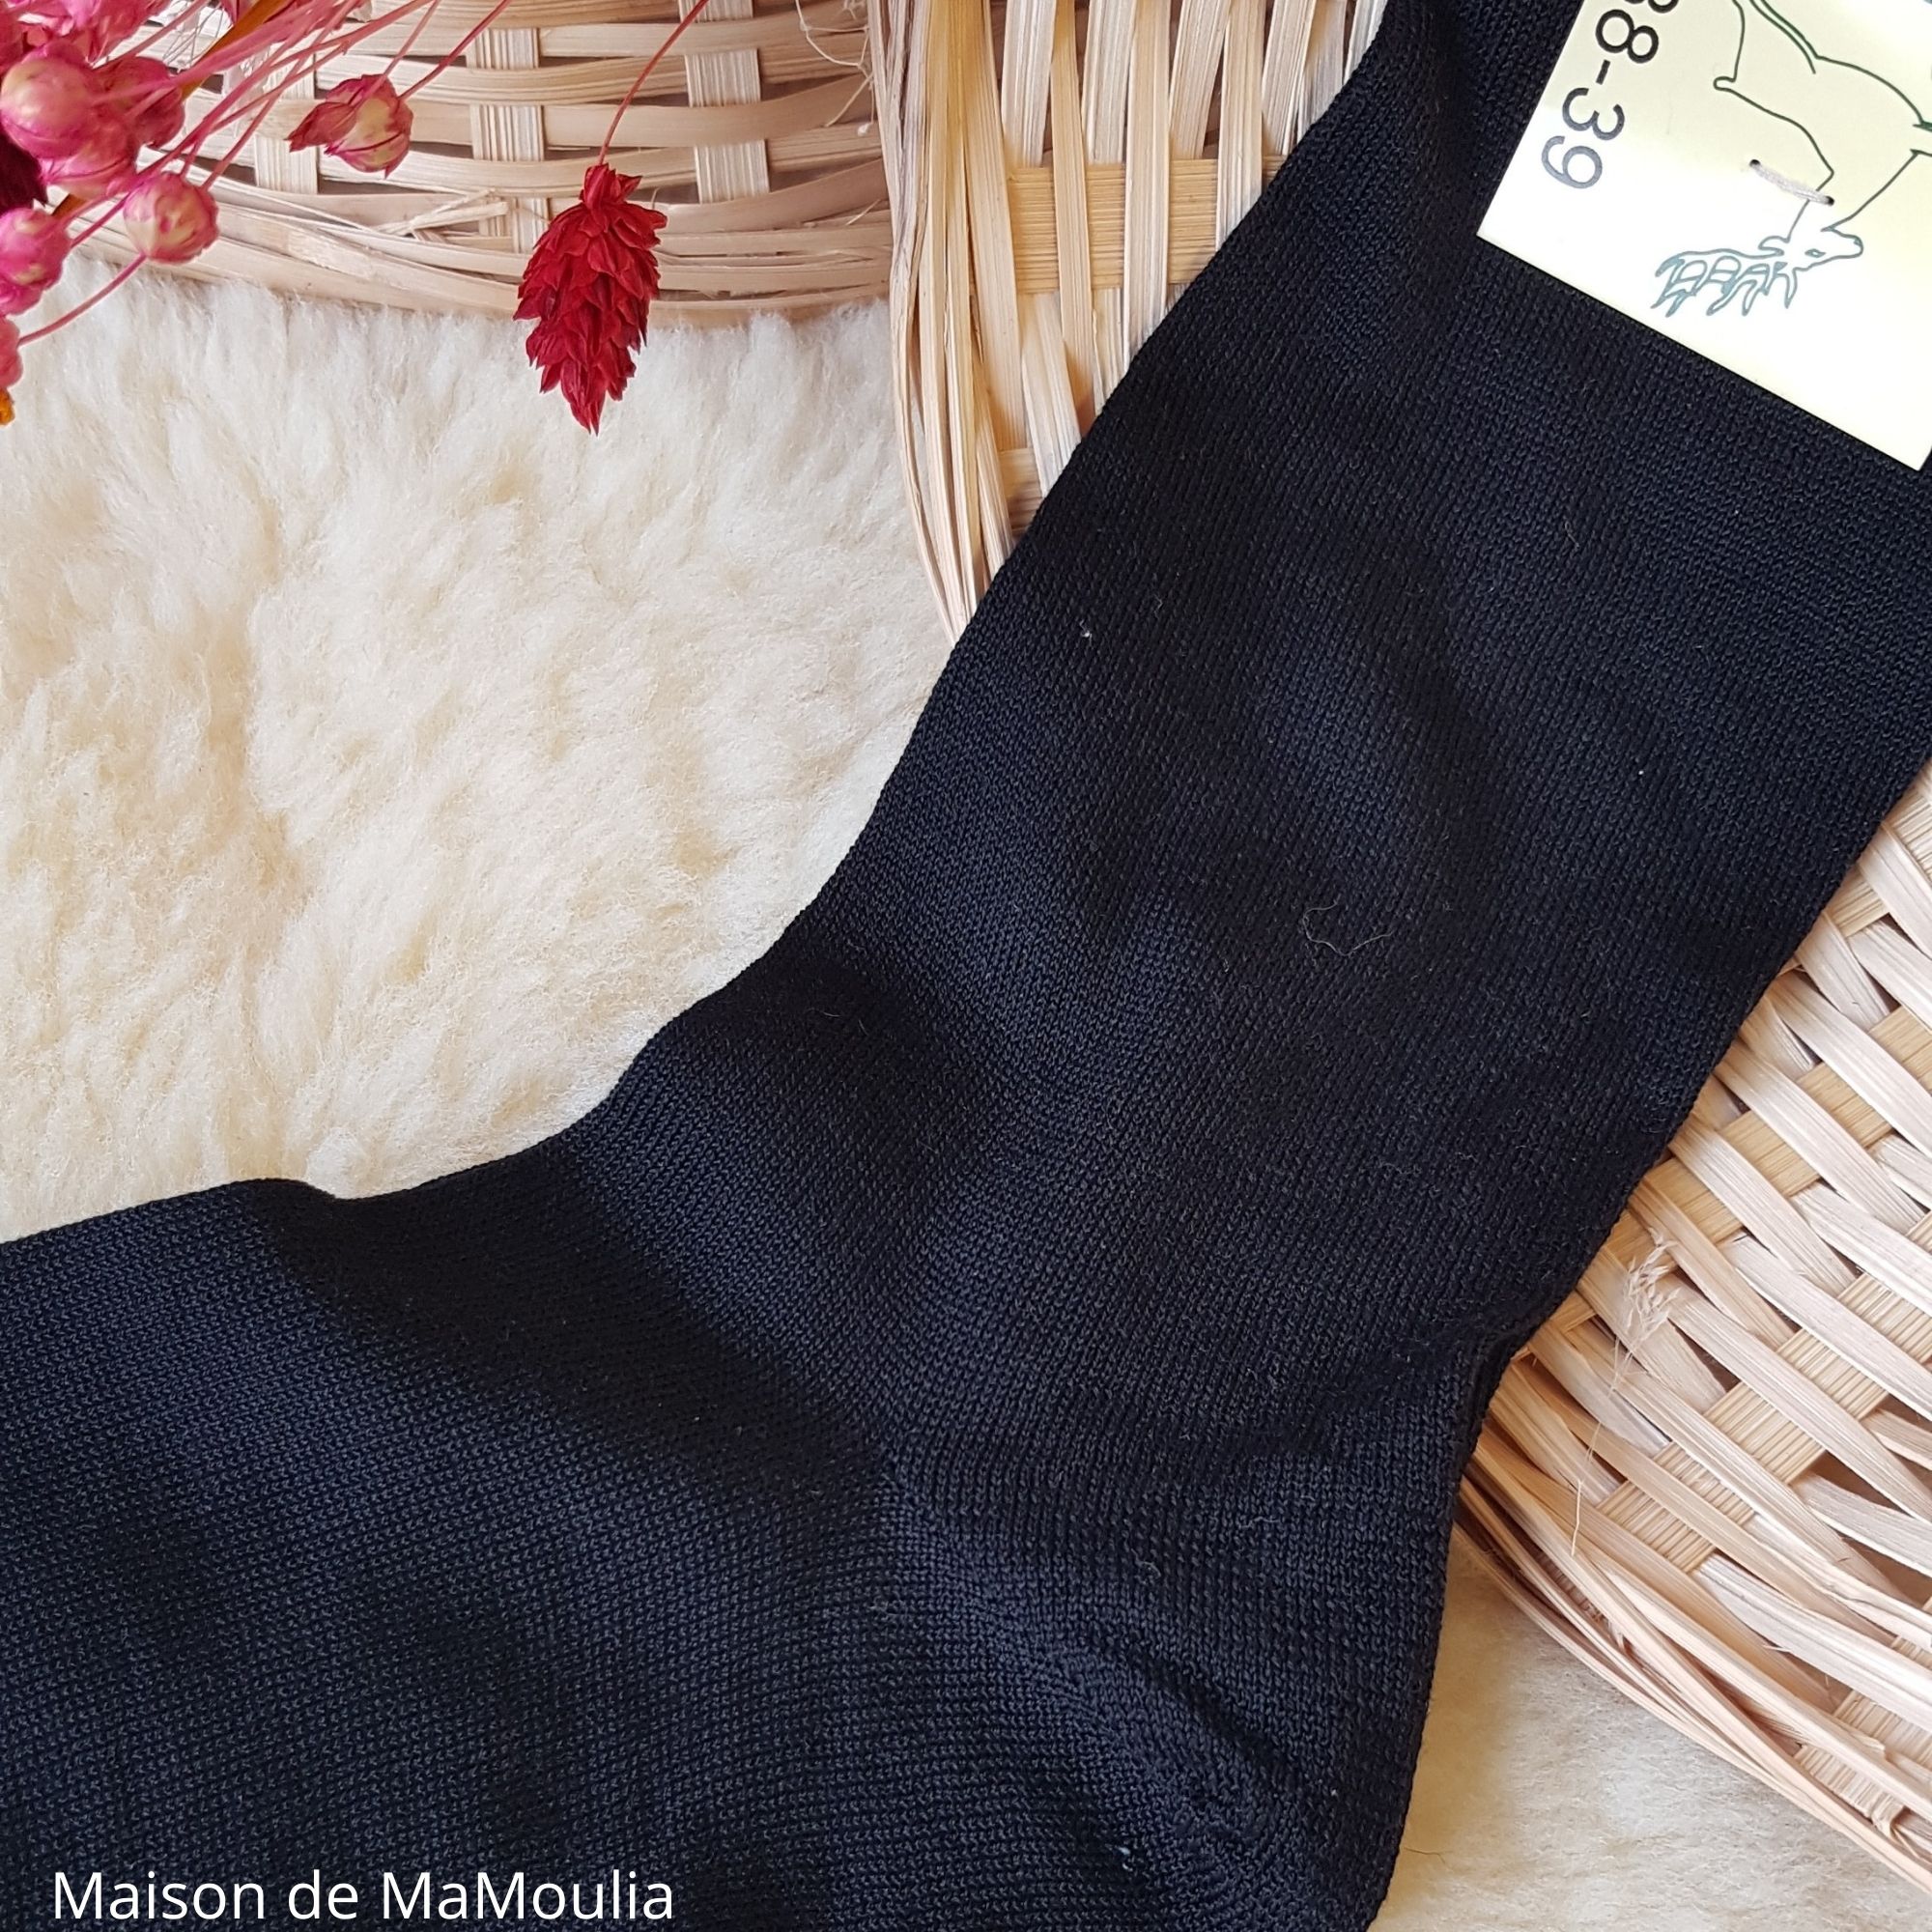 081-chaussettes-fines-pure-soie-ecologique-hirsch-natur-maison-de-mamoulia-adulte-noir